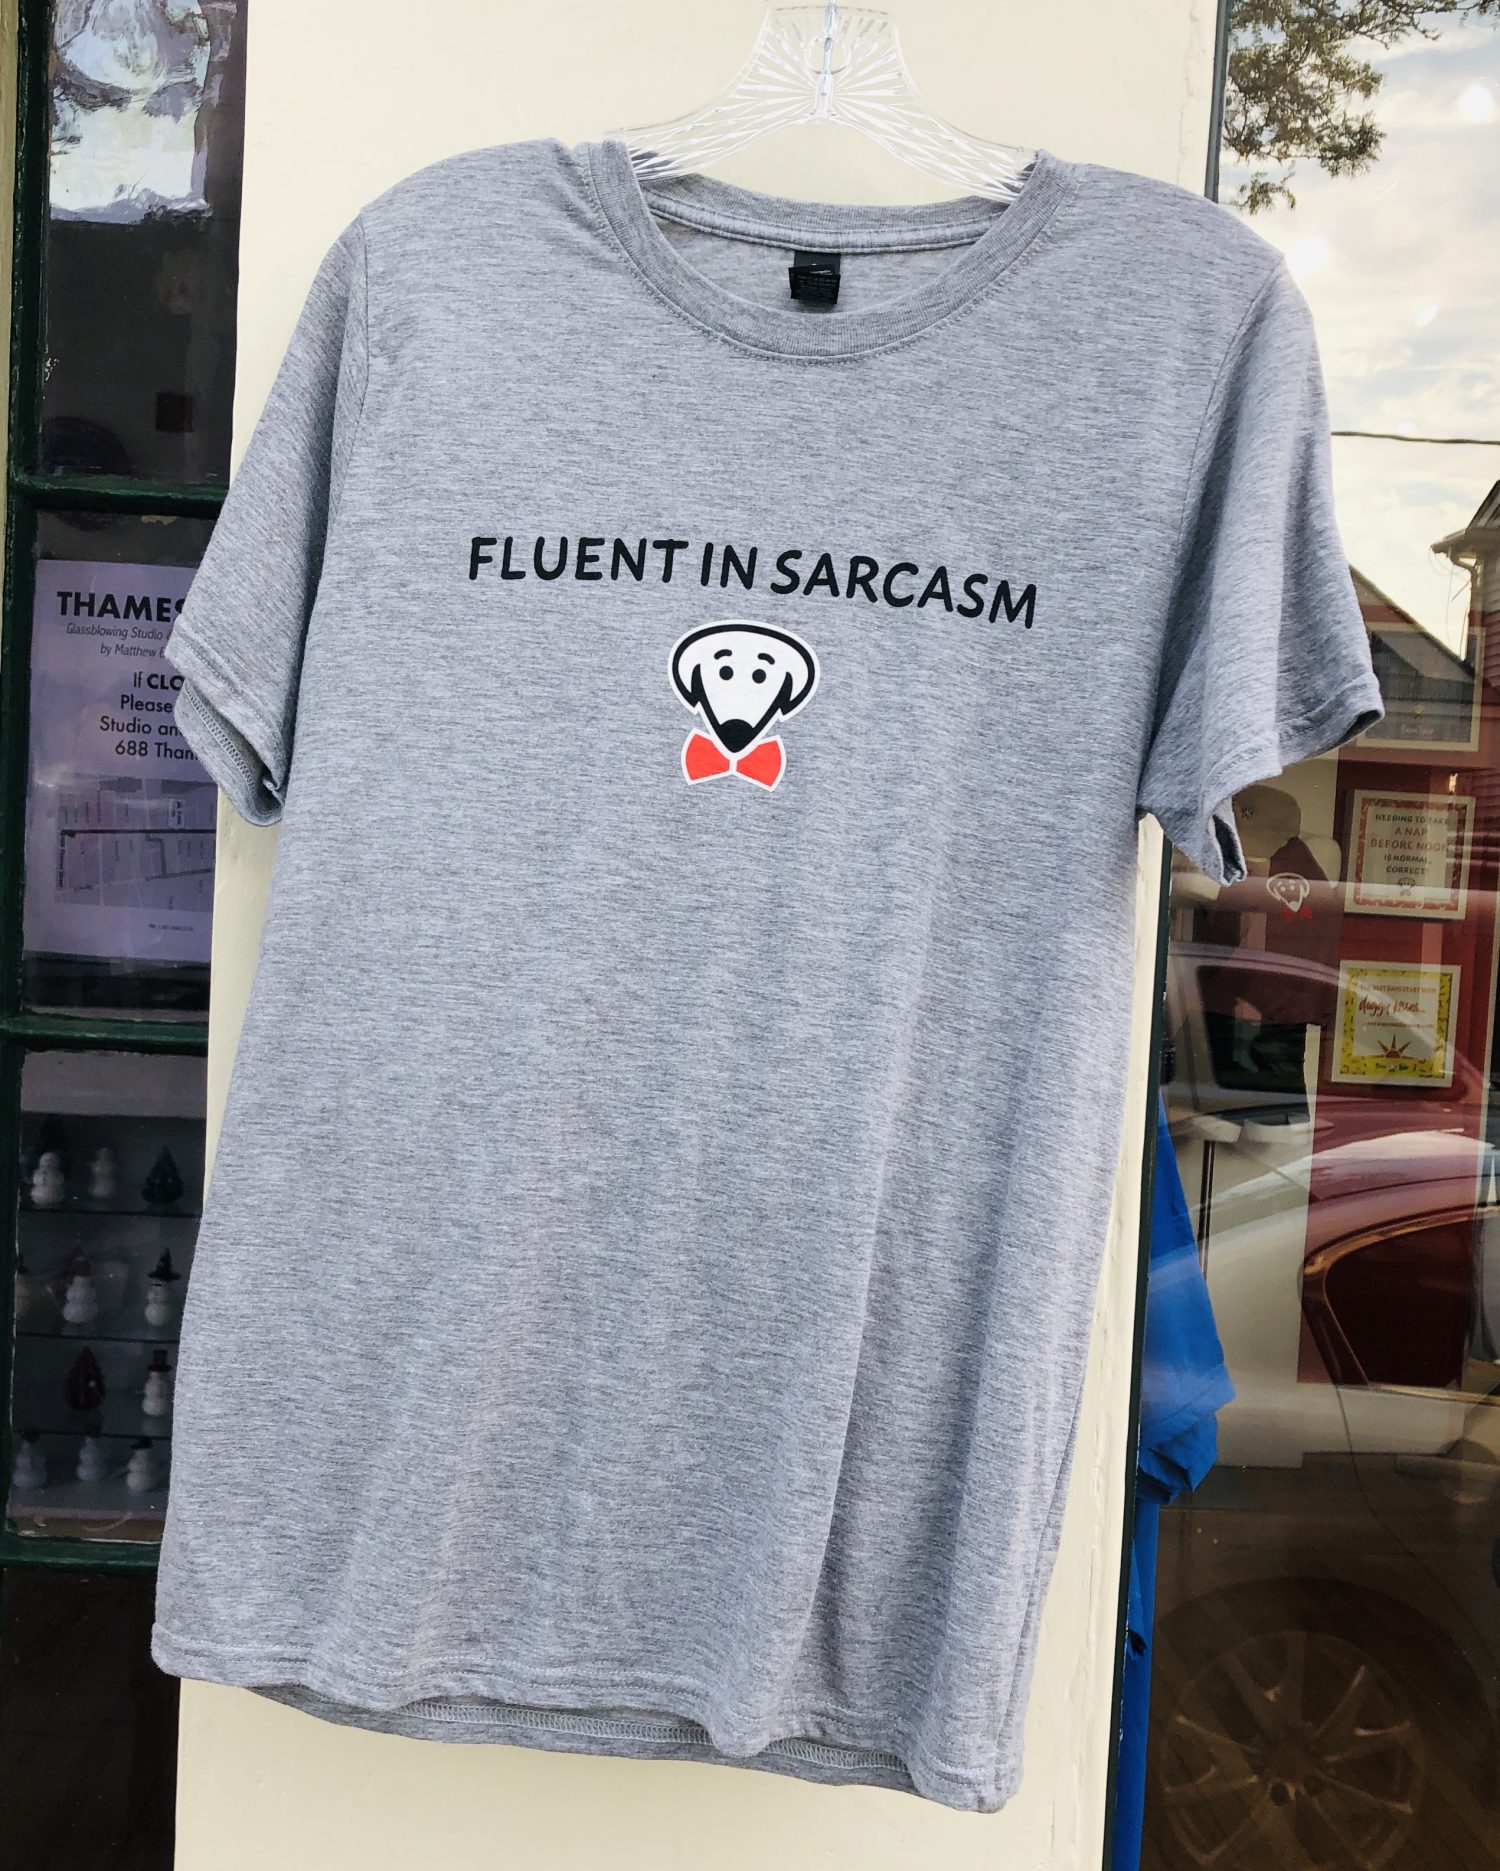 Beau Tyler - Fluent in Sarcasm shirt